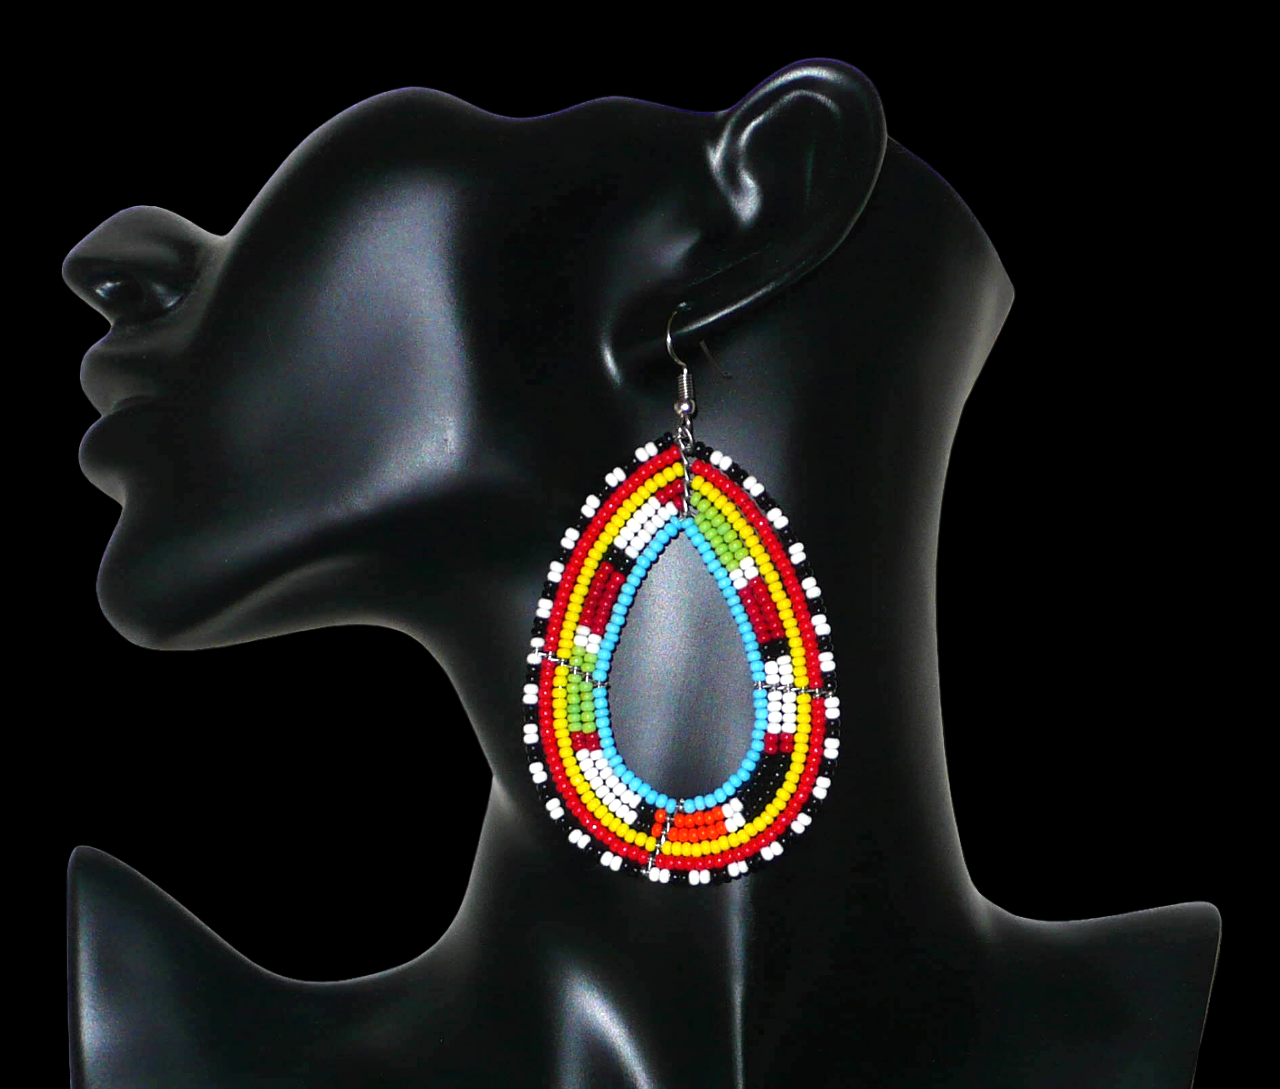 Longues boucles d'oreilles ethniques au style afro chic composées de perles de rocaille multicolores enfilées sur six rangées de fils de fer montés en forme de gouttes. Elles mesurent 8,5 cm de long et 5 cm de large. Elles se portent sur des oreilles percées. Timeless Fineries